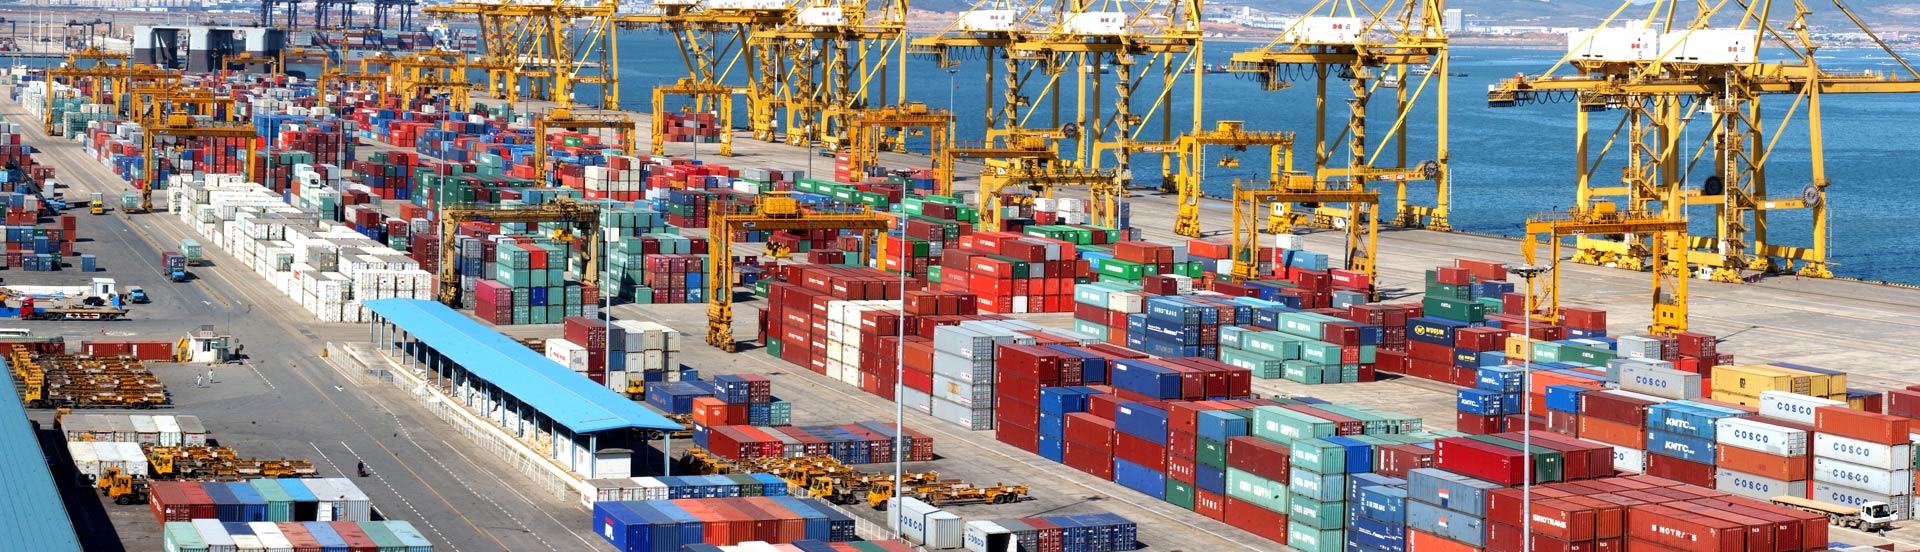 天津港到Hamad port, Qatar 哈马德港,卡塔尔
海运费集装箱海运费